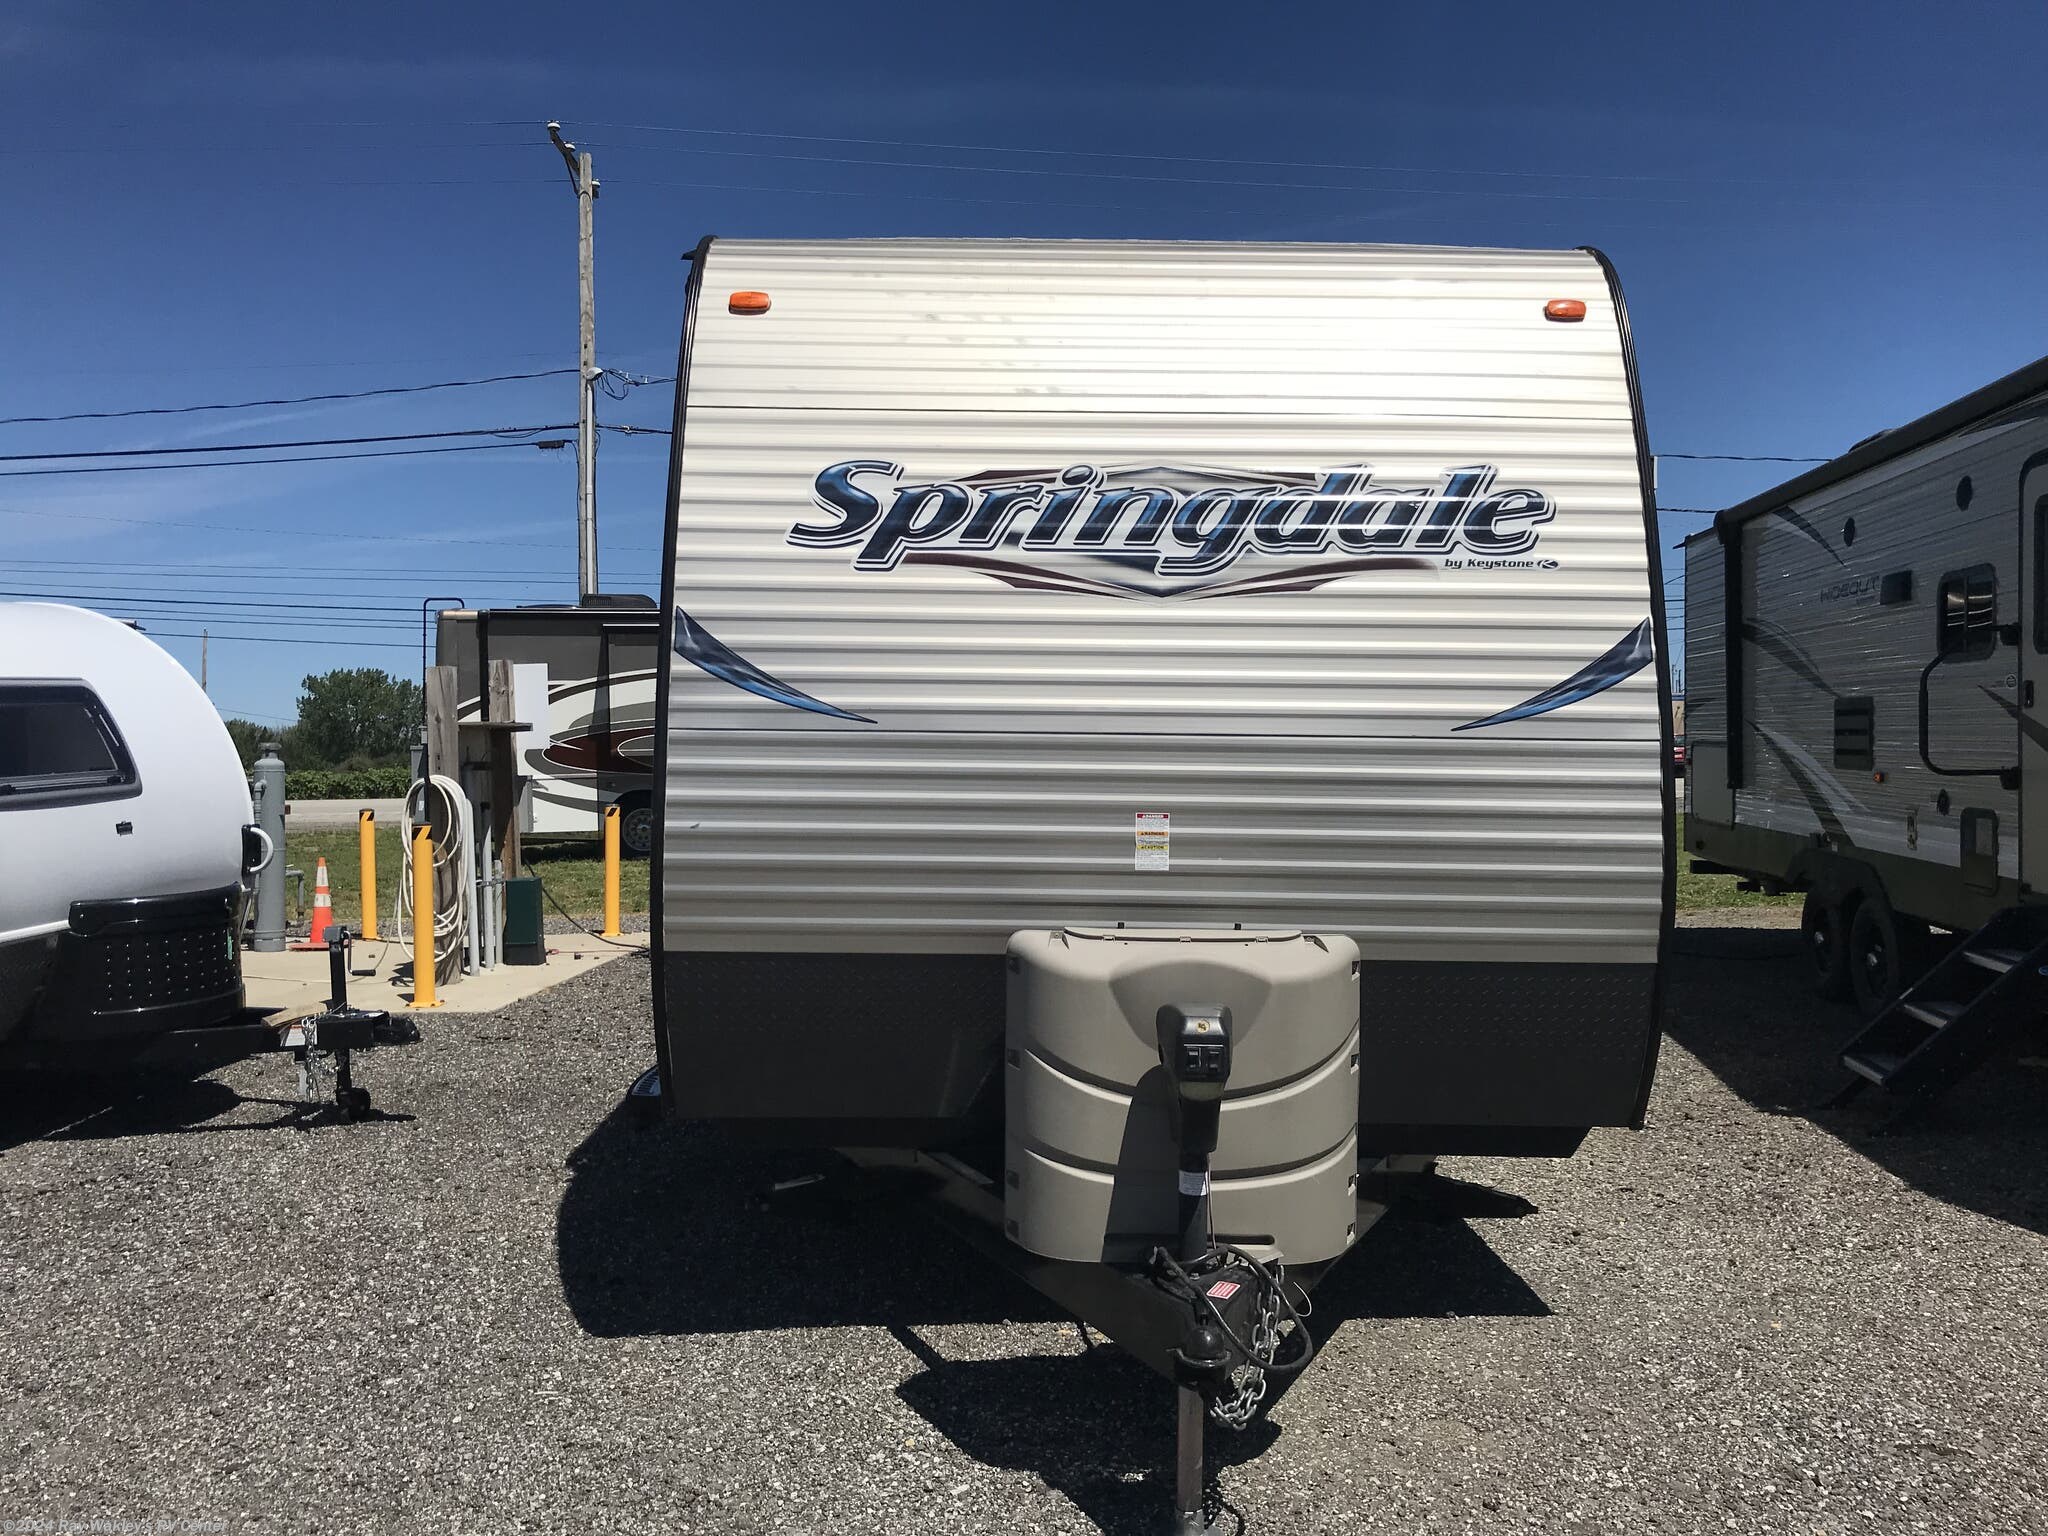 2014 springdale travel trailer value